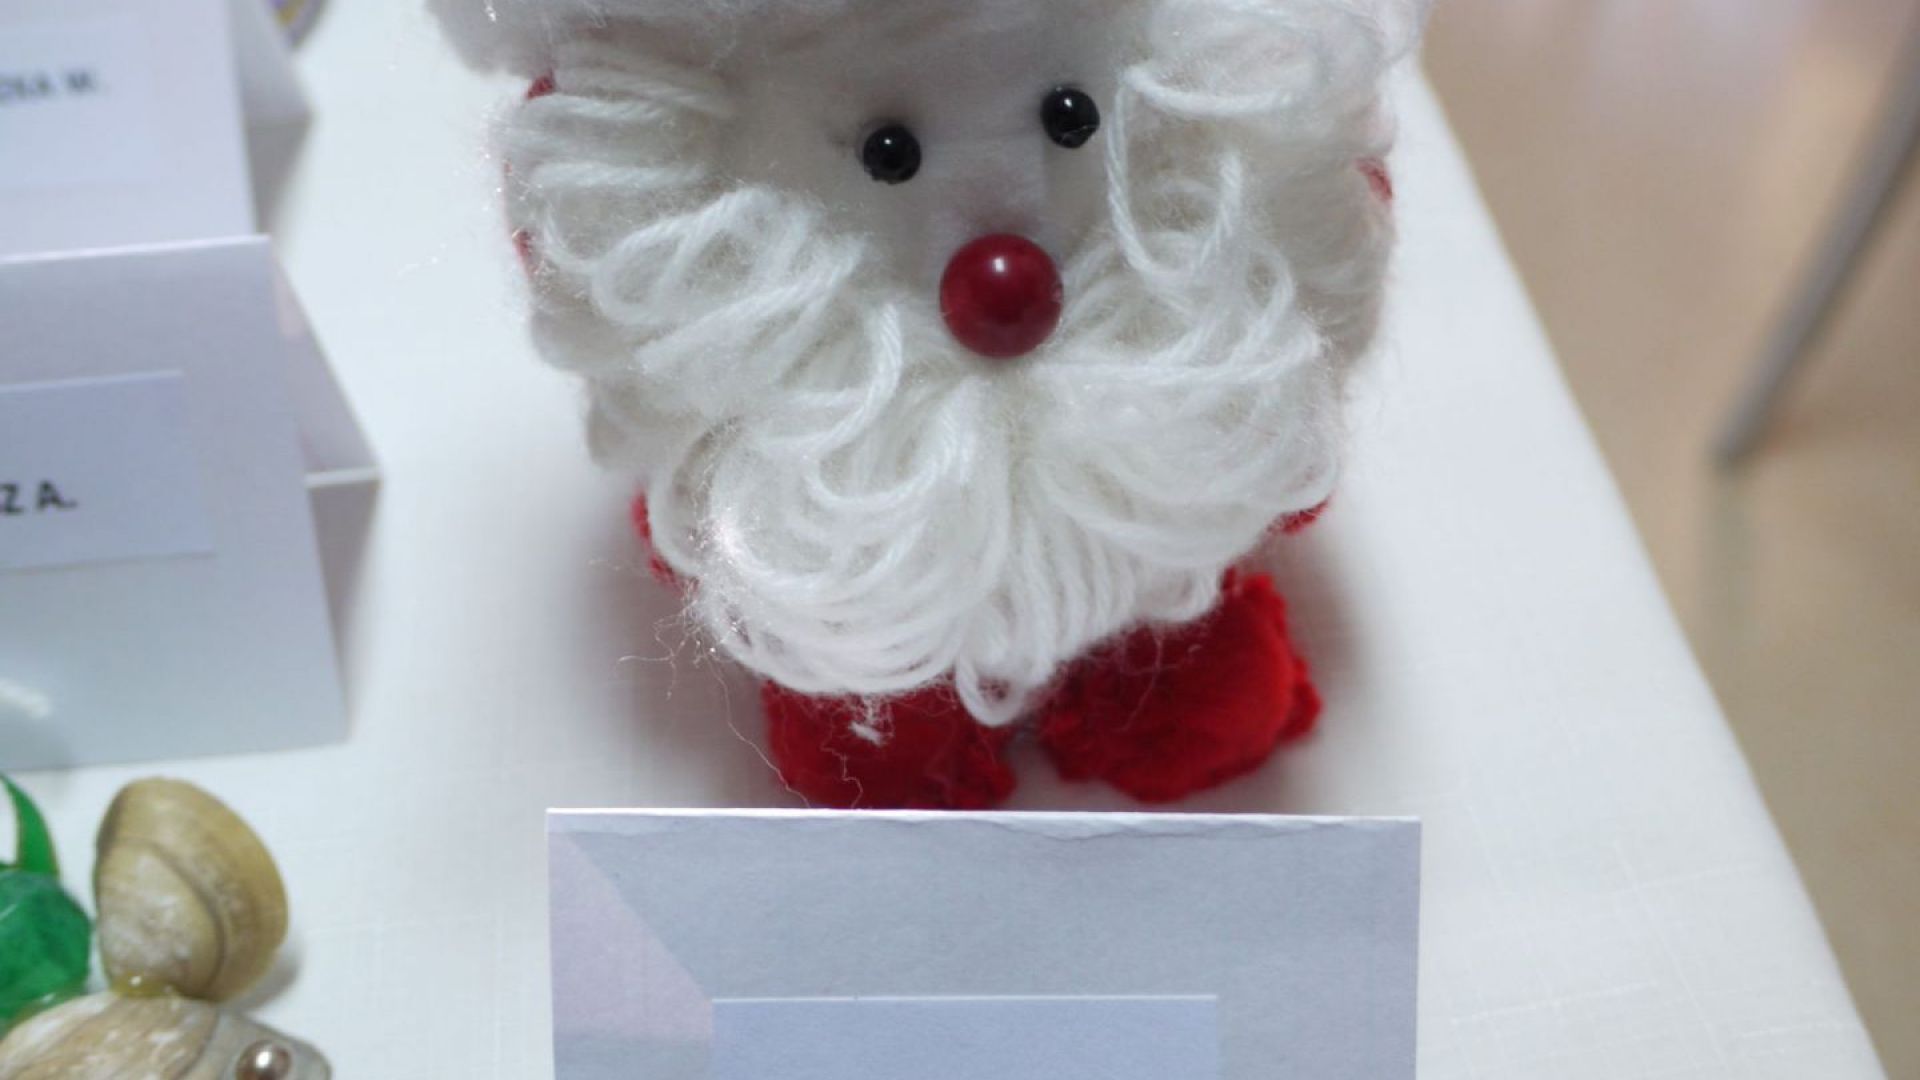 Mikołaj - mały Mikołaj przypominający maskotkę wykonany z włóczki i filcu. Autor: Justyna R.